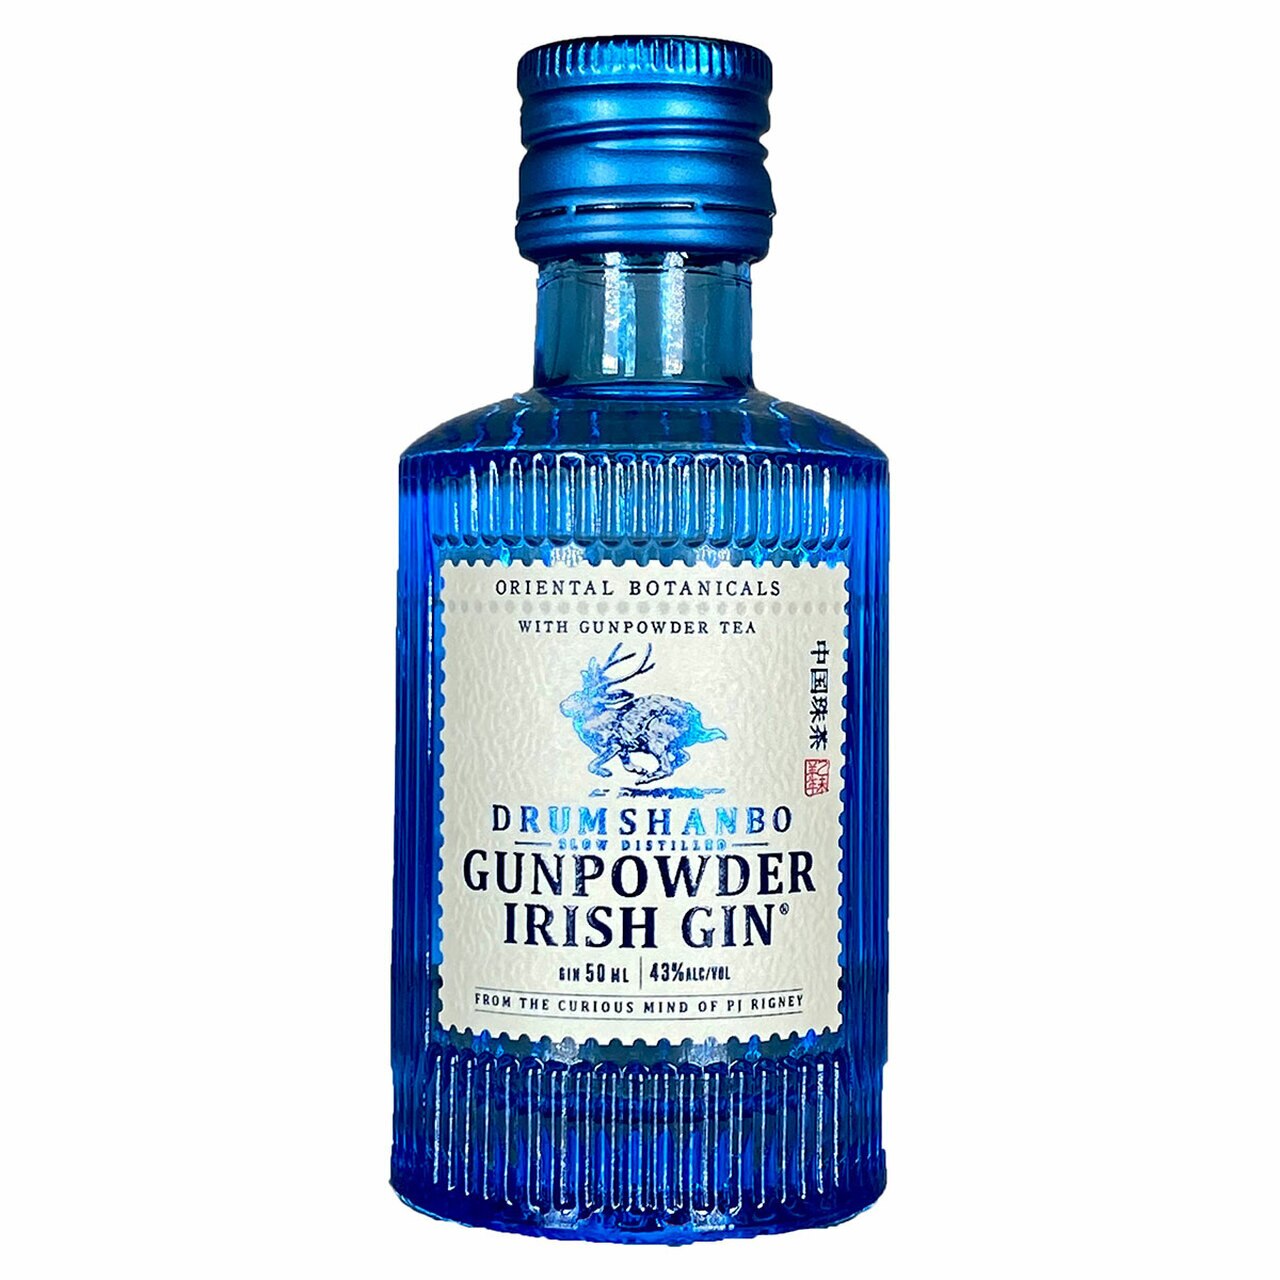 Drumshanbo Gunpowder Irish Gin 50ml-0